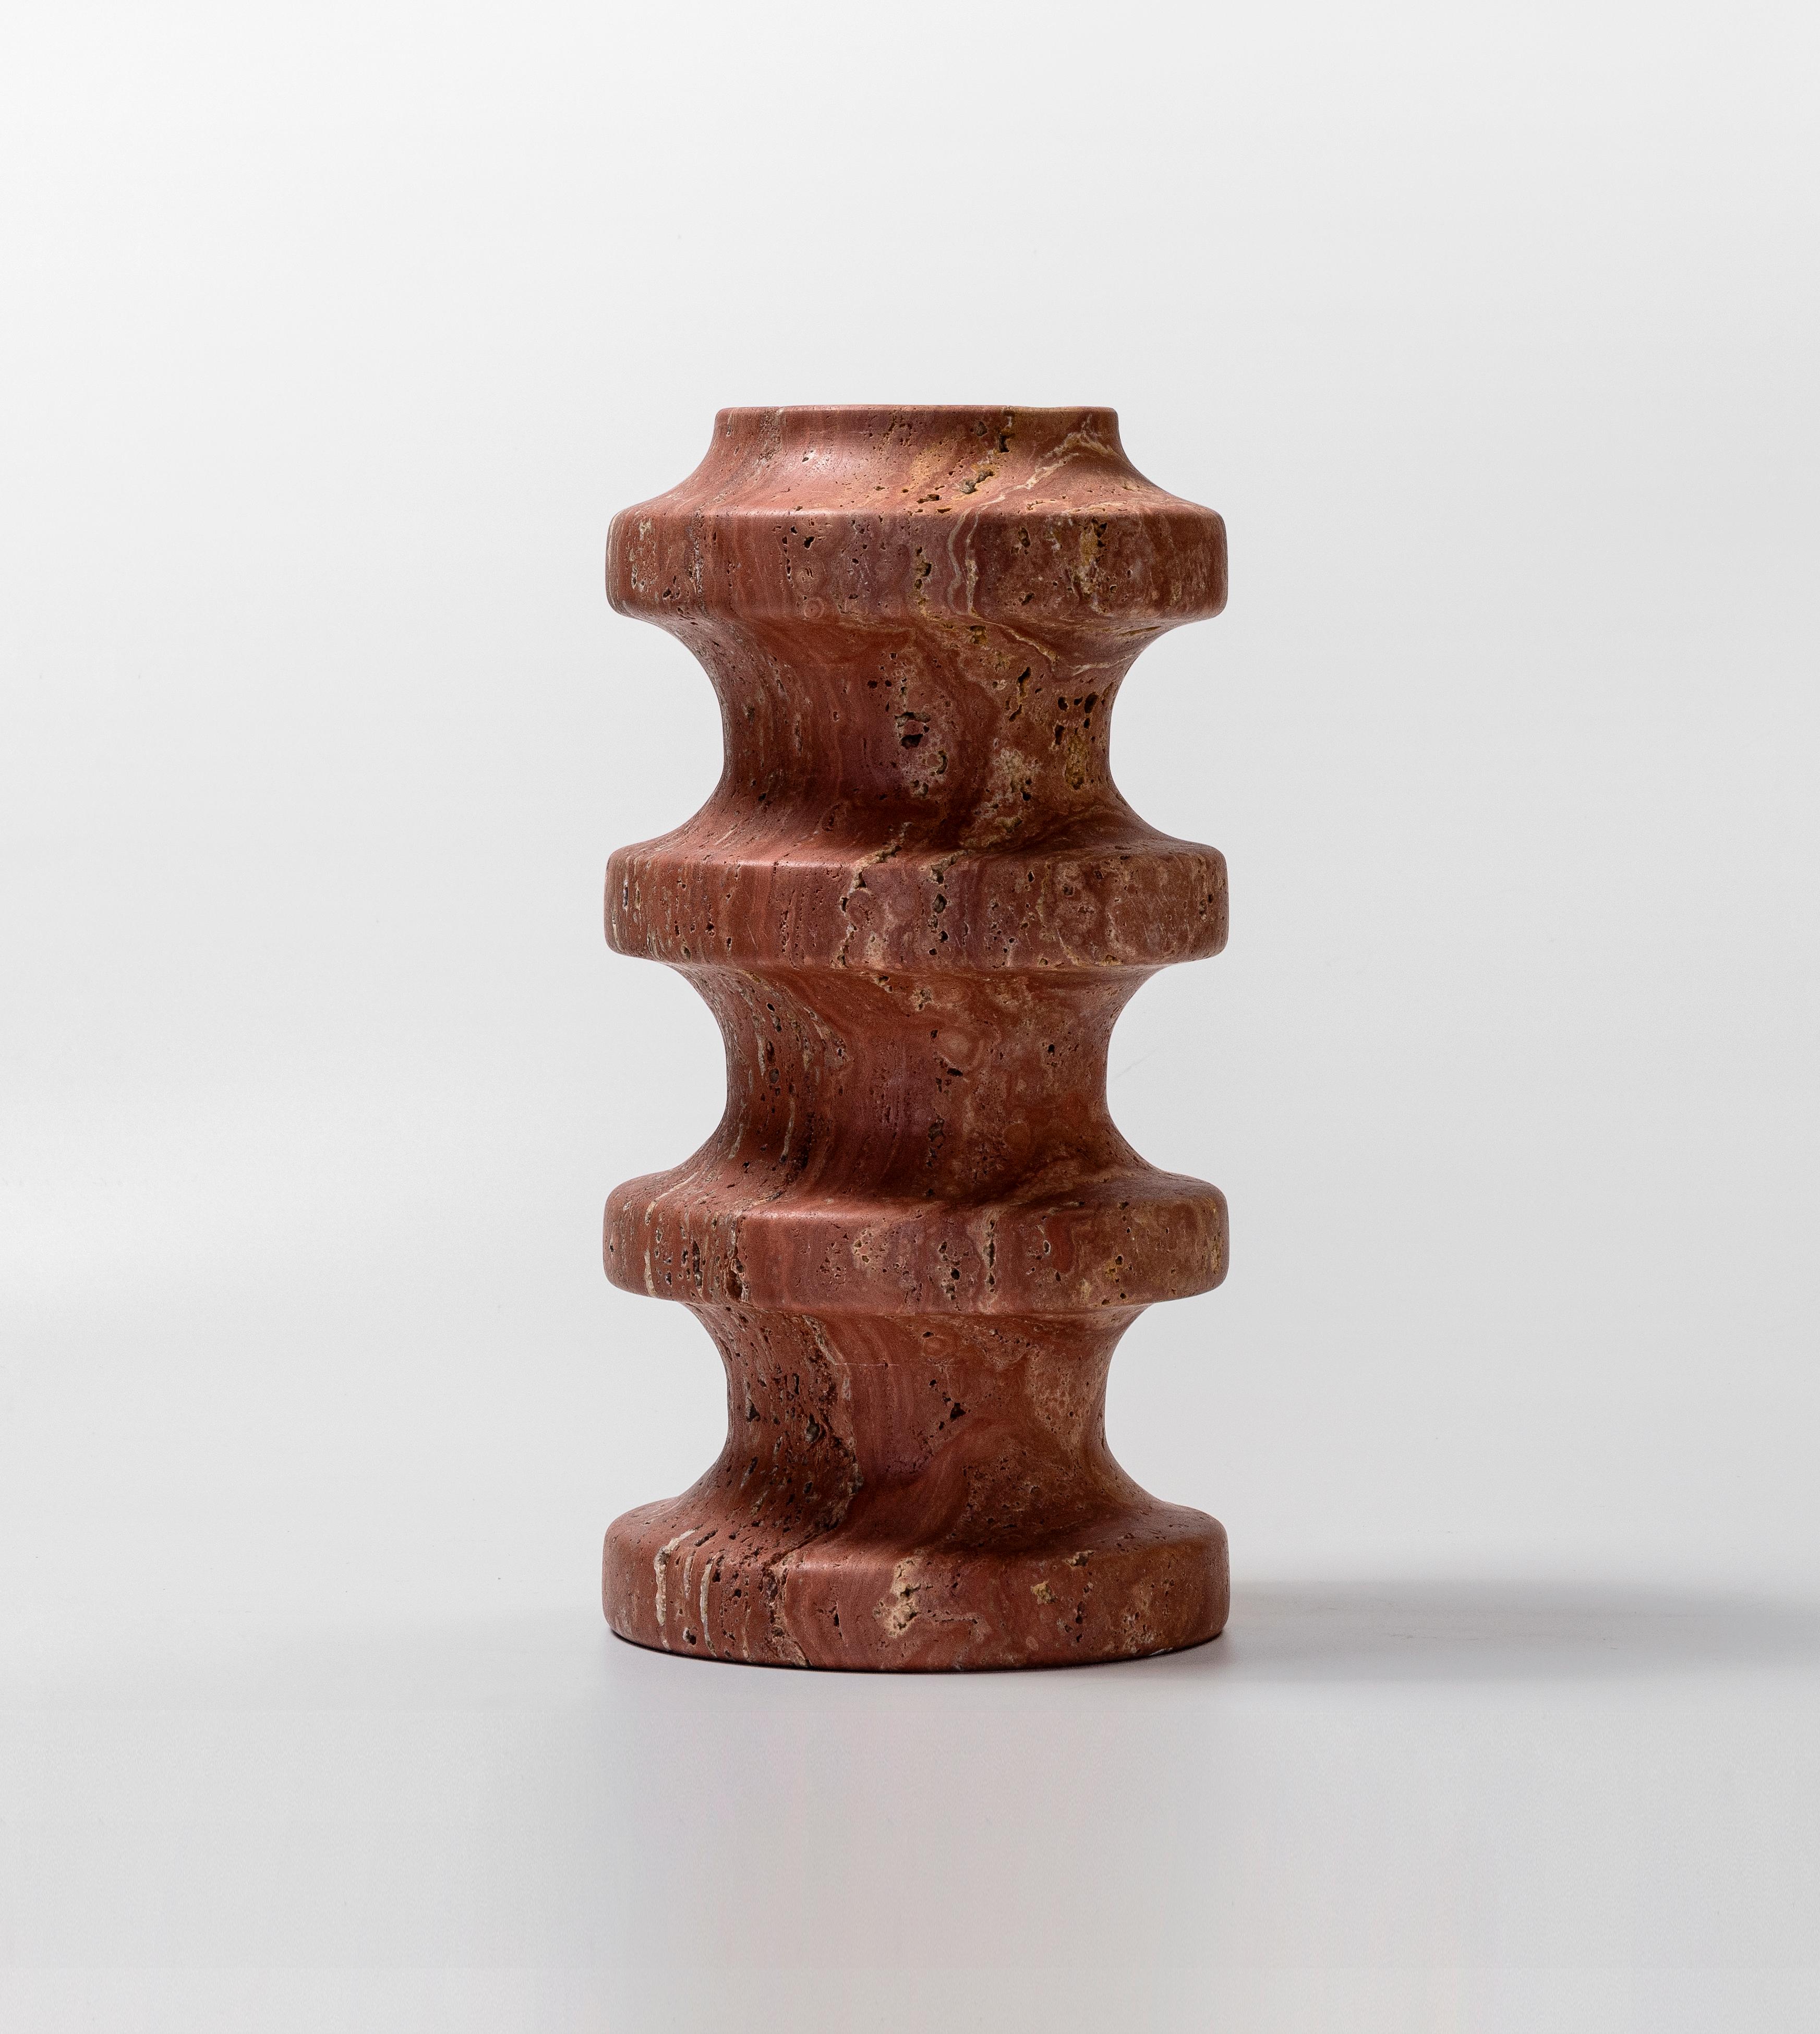 SPIRA est un hommage moderne aux rituels anciens. Le vase 03 reprend le motif de la base de la colonne grecque antique.

Le travertin, avec ses variations de couleur naturelles et ses veines délicates, ajoute un élément de beauté organique à cette